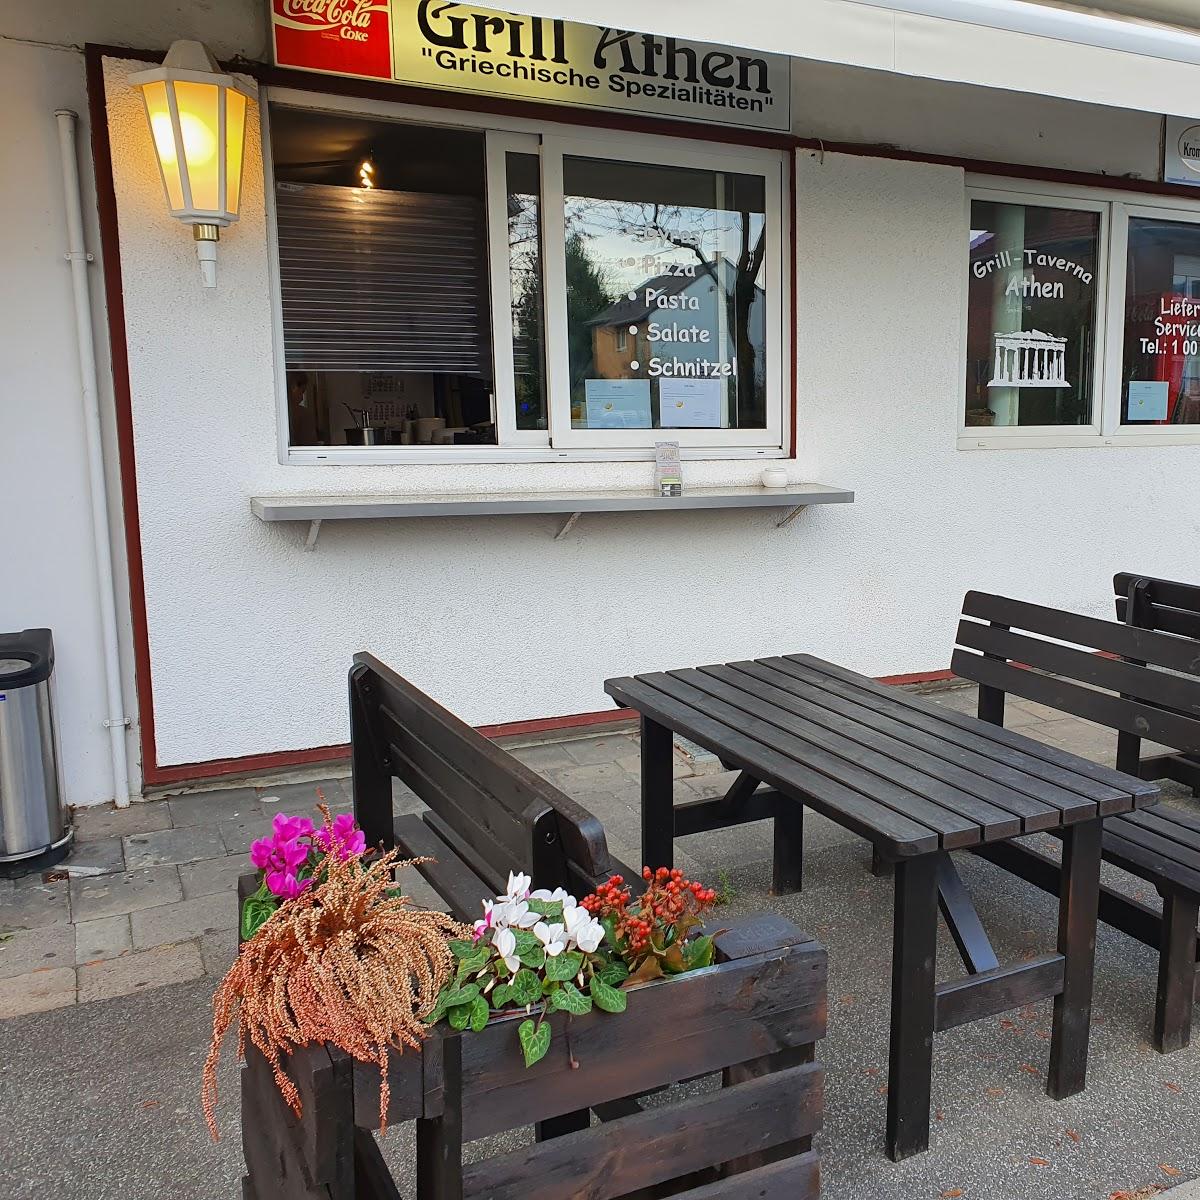 Restaurant "Grill Athen" in  Lippstadt